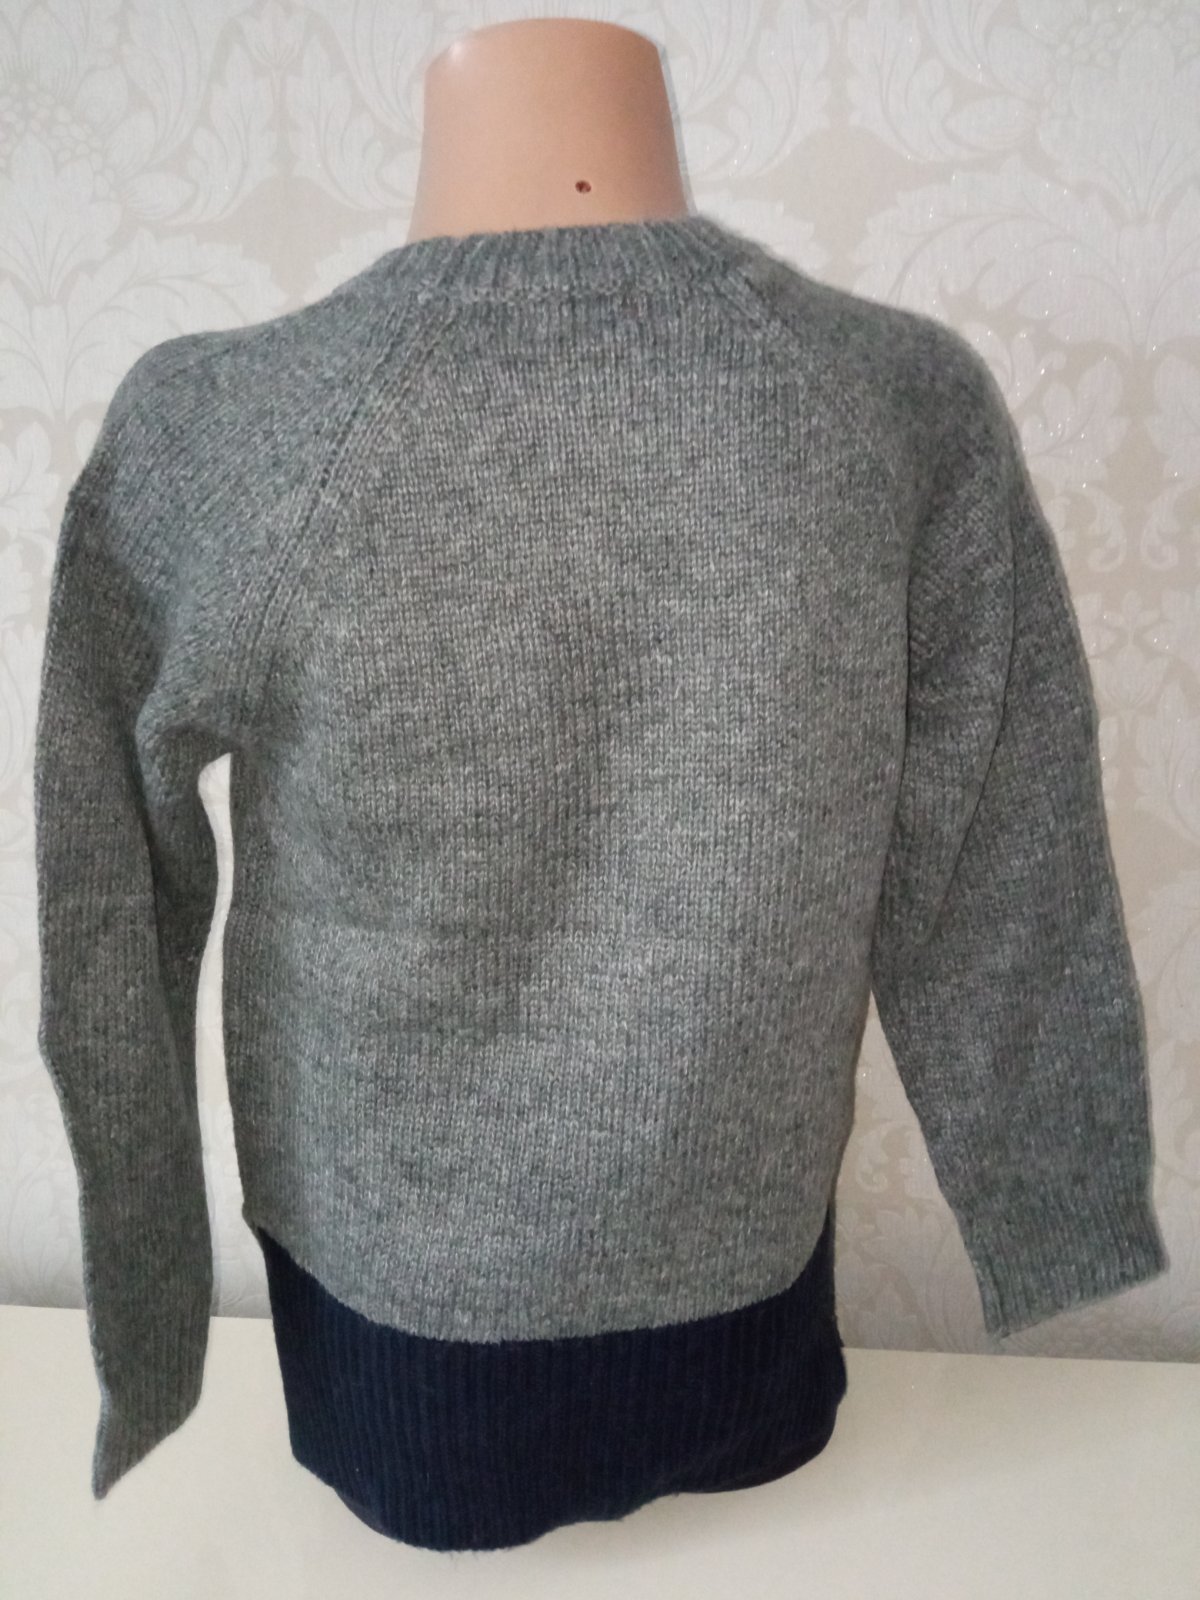 Dievčenský sveter s kamienkami OVS,5-6 r.